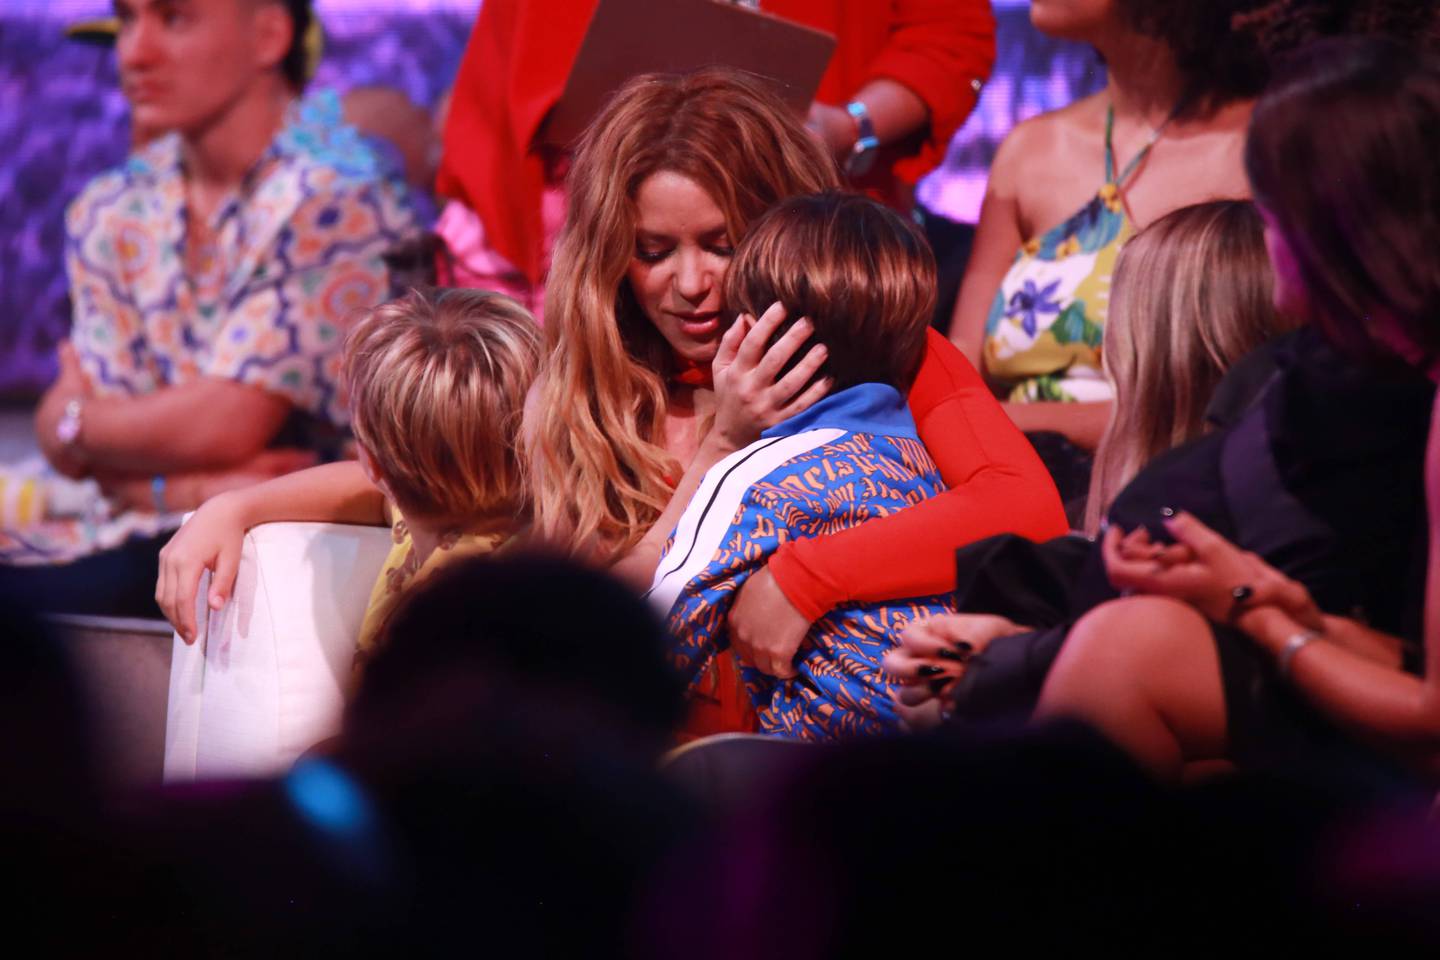 Shakira asistió a los Premios Juventud acompañada por sus hijos, Sasha y Milan